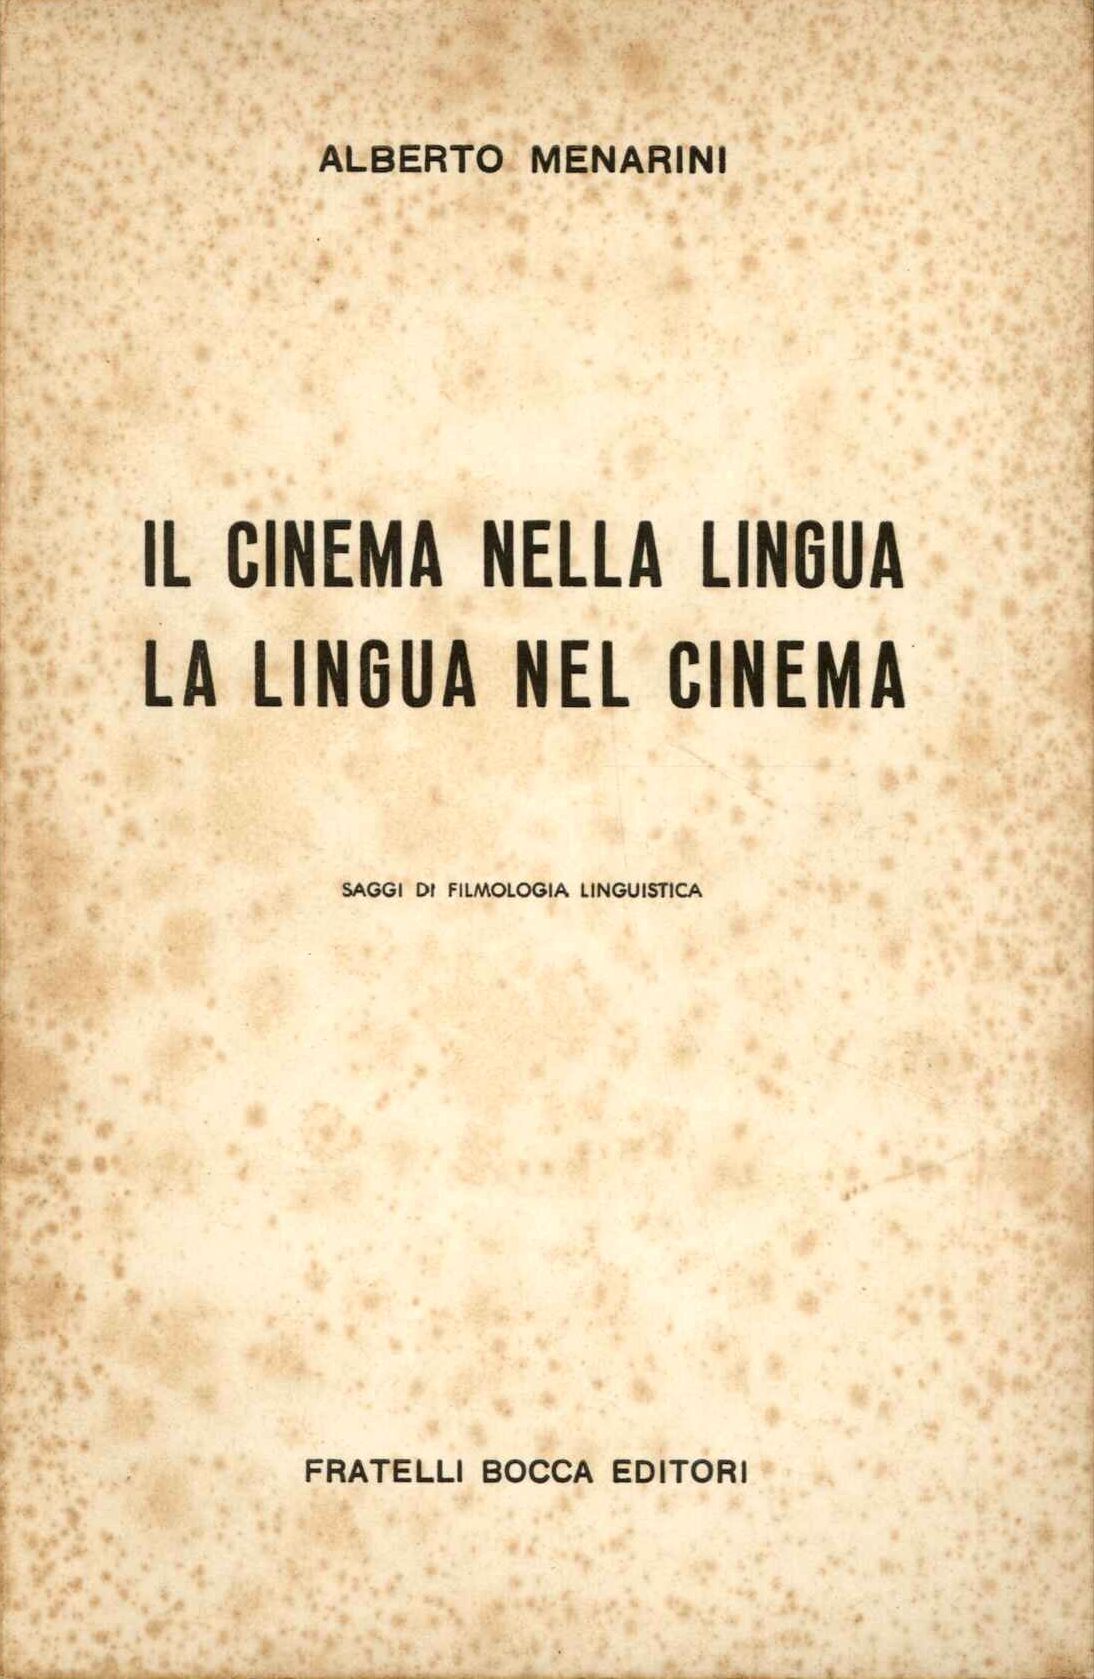 Il cinema nella lingua, la lingua nel cinema